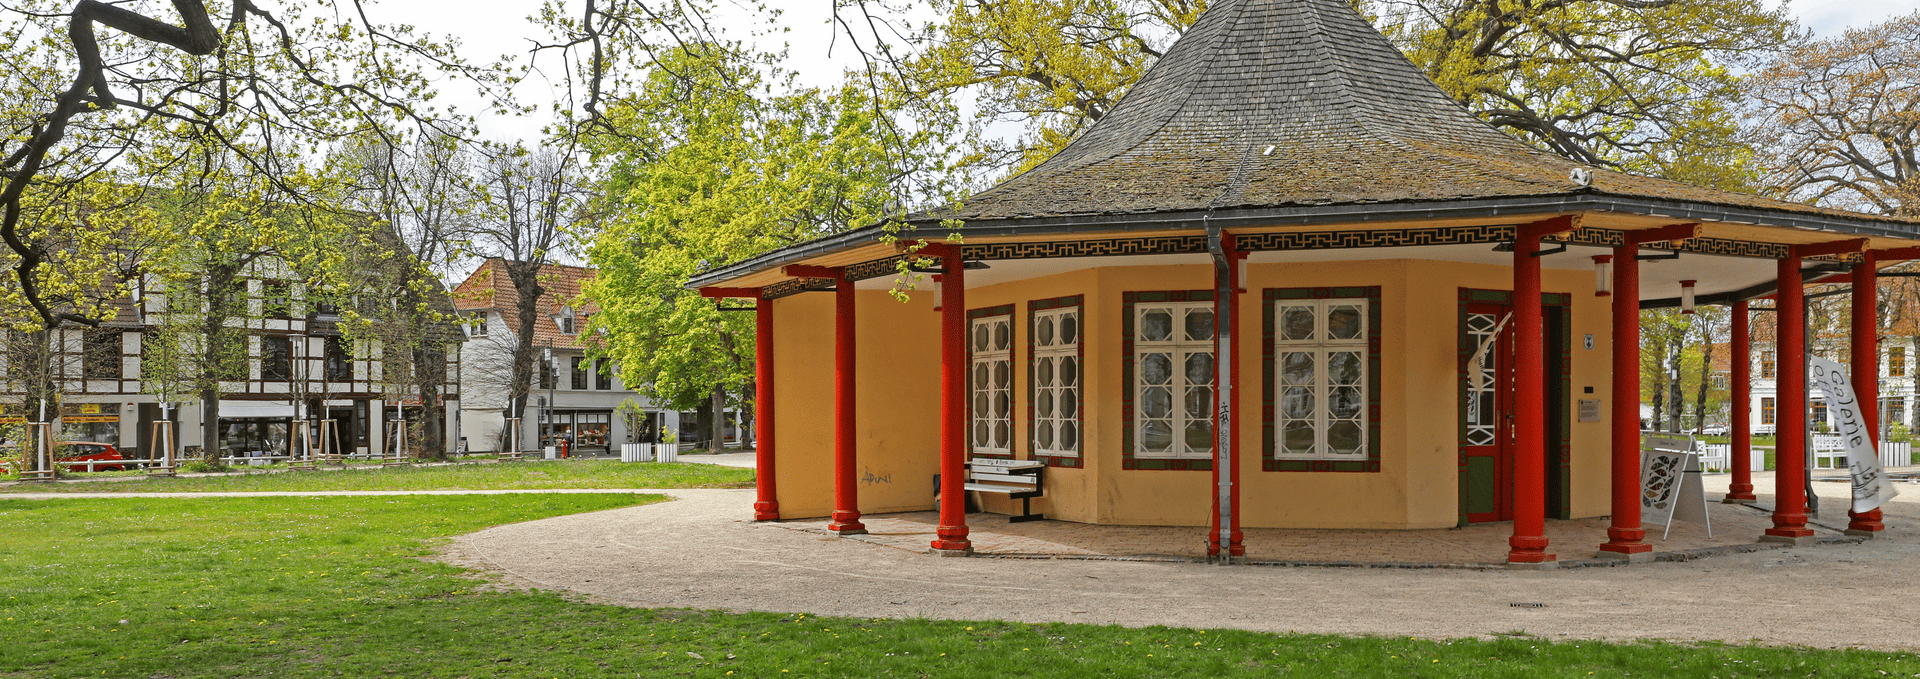 Roter Pavillion in Bad Doberan, © TMV/Gohlke